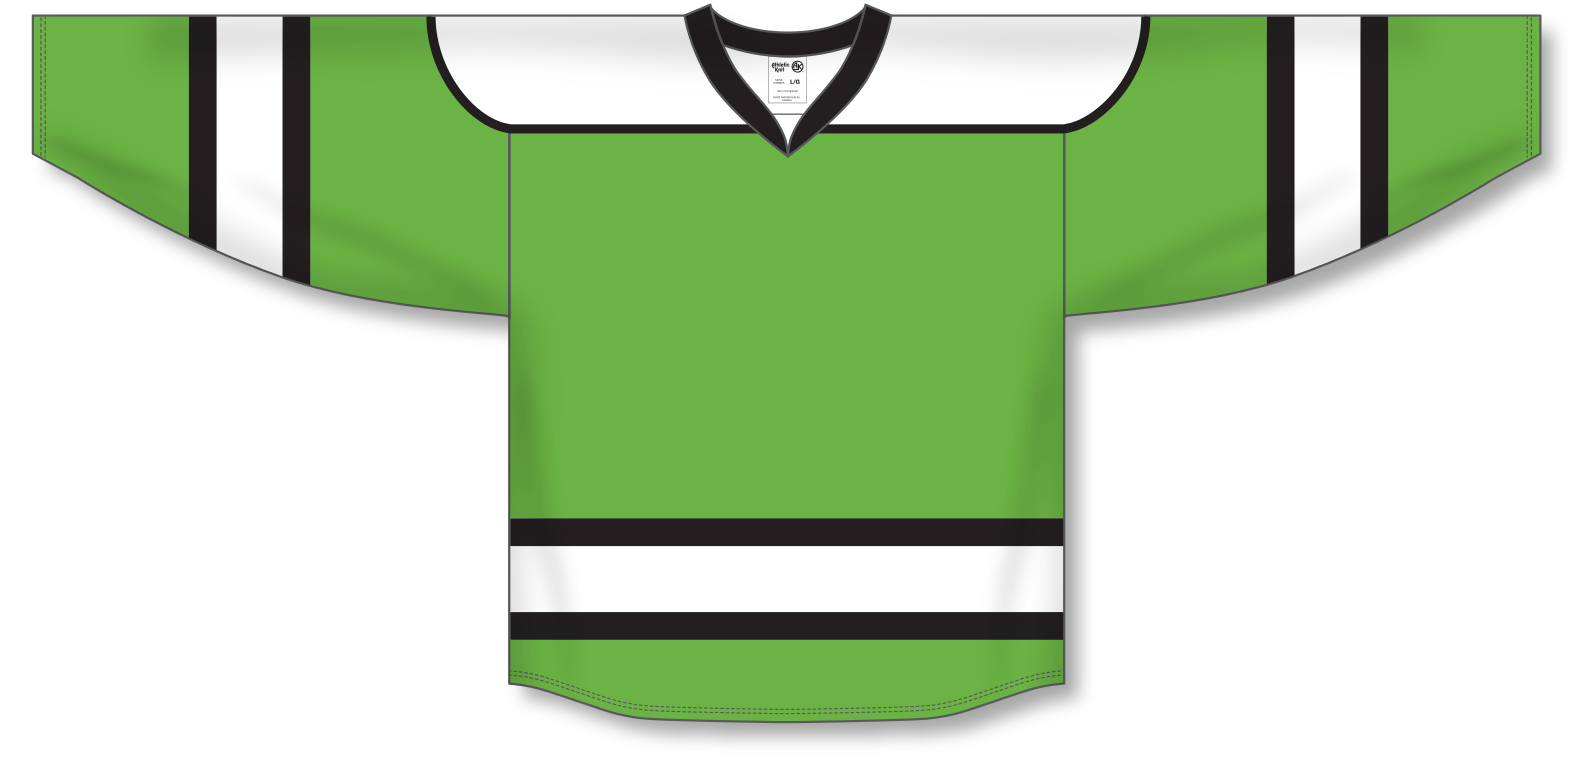 H500-001 Black/Green Blank hockey Designer Jerseys